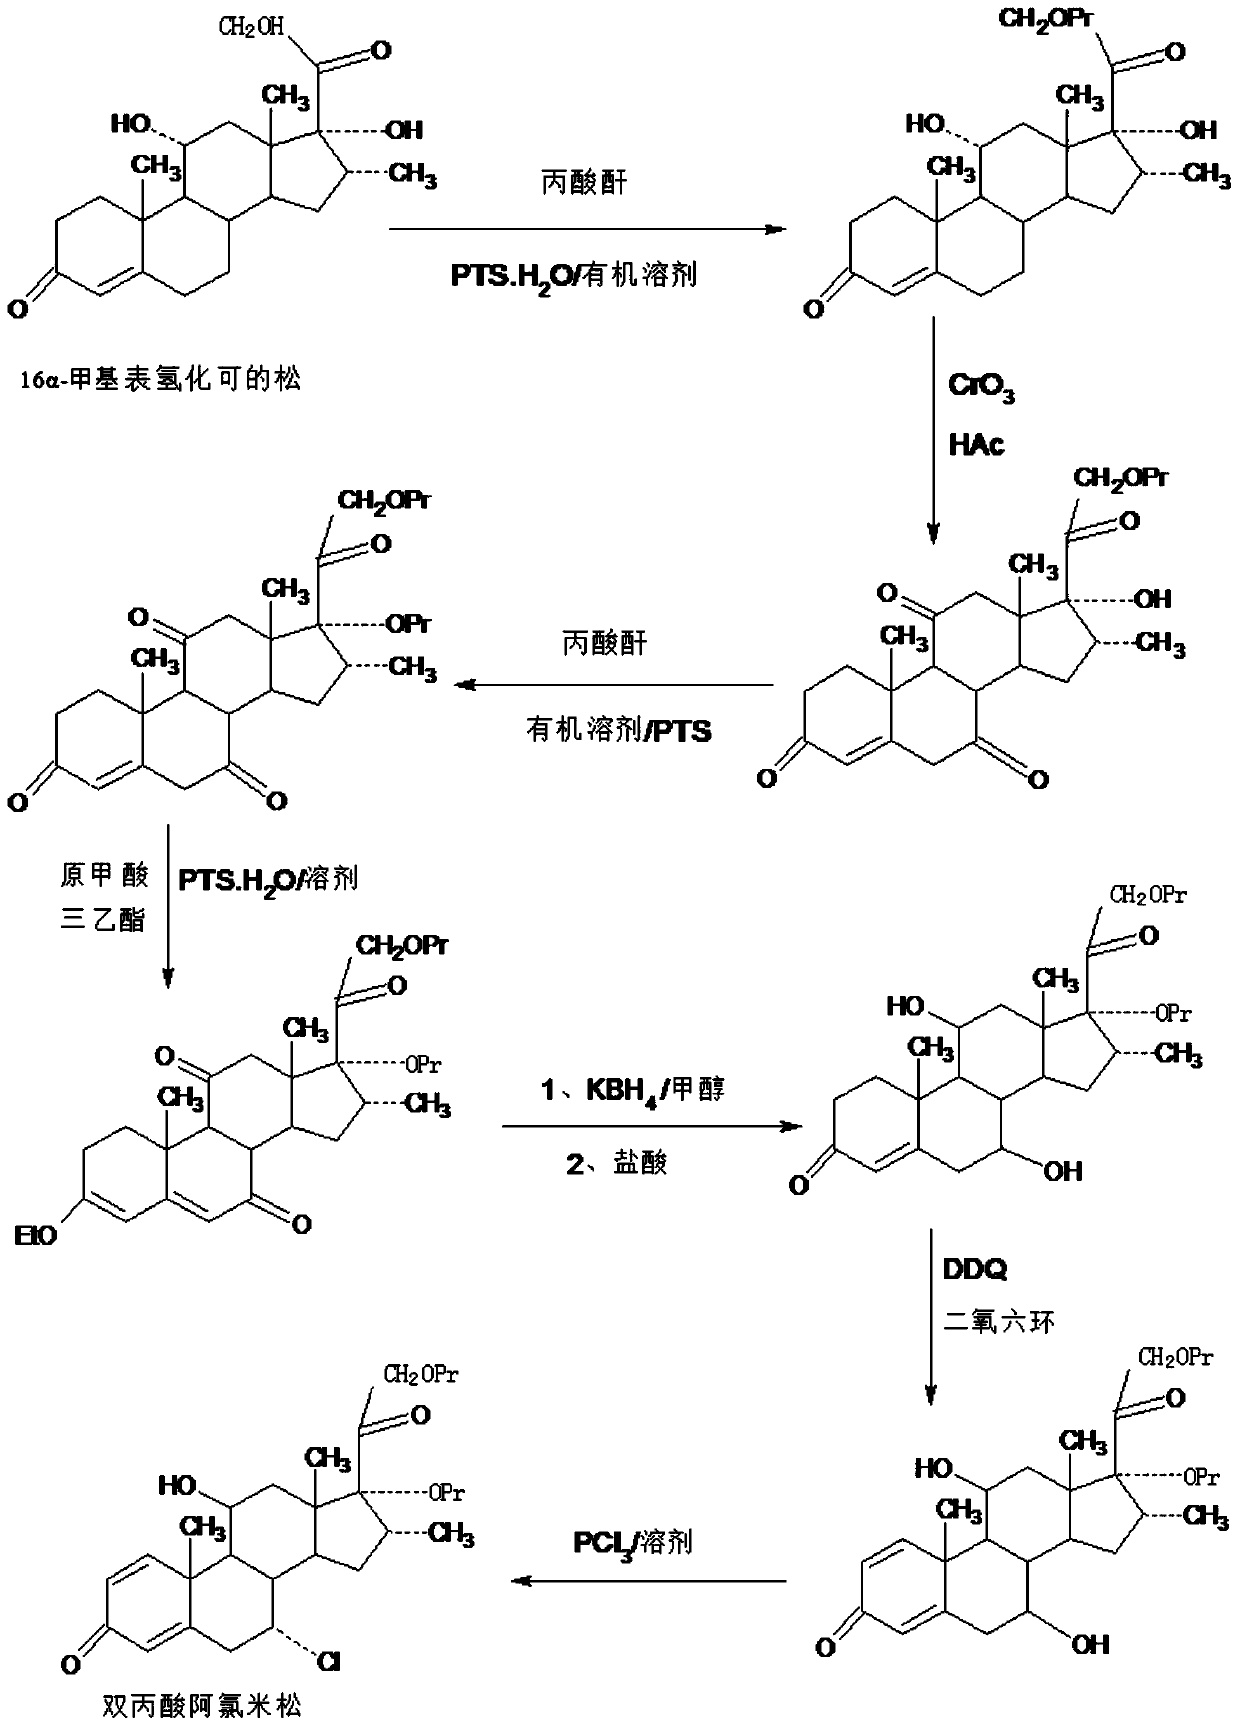 Method of reduced intermediate used for alclometasone-17,21-dipropionate